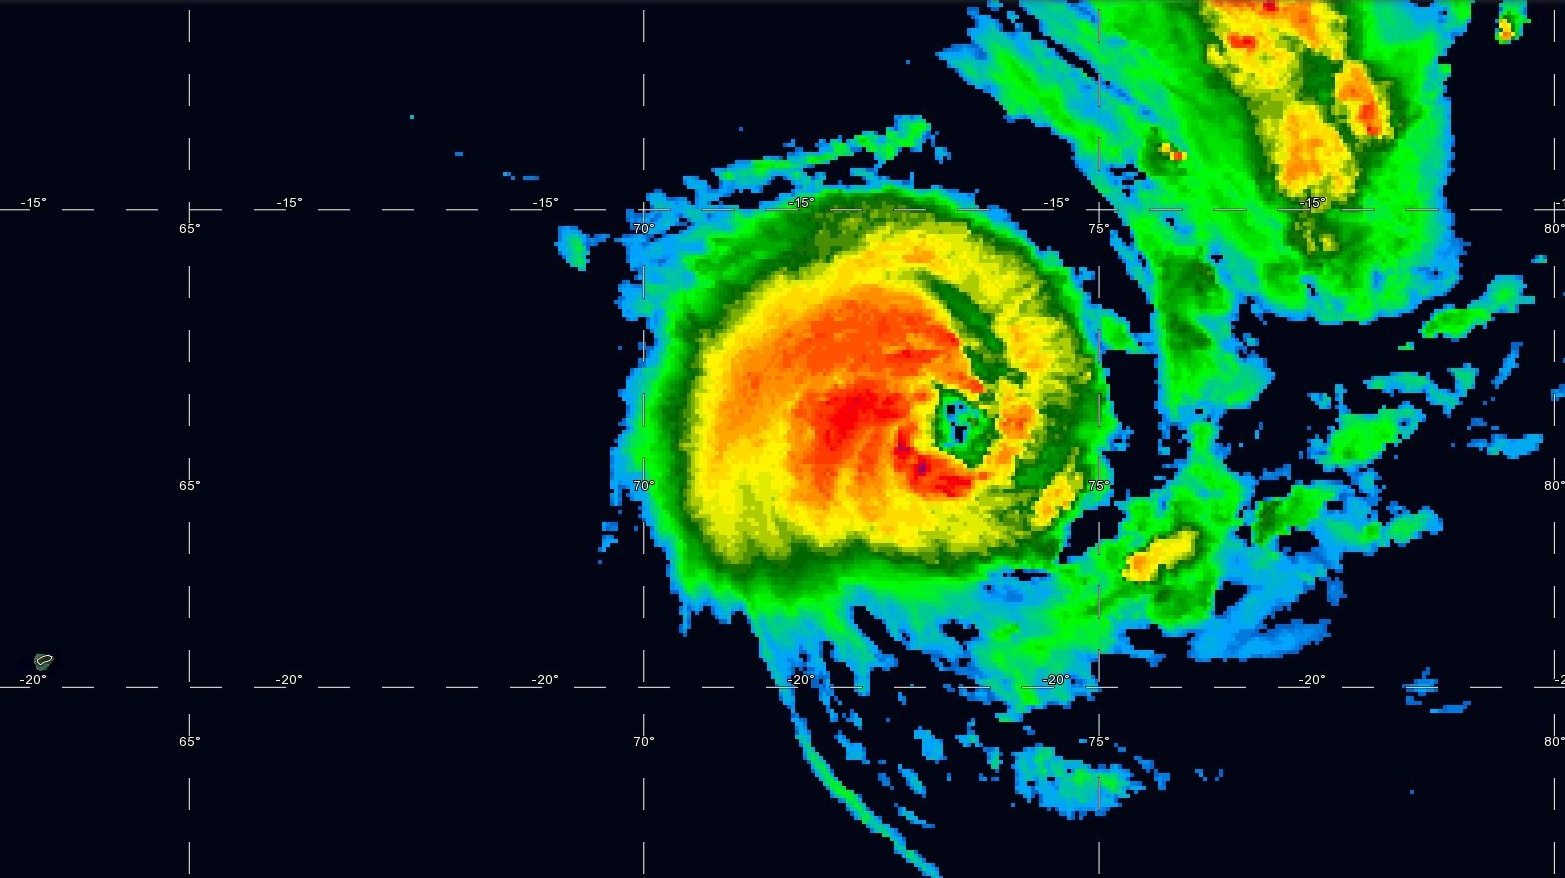 Le cyclone tropical HALEH(17S) capturé ce matin à 05h.